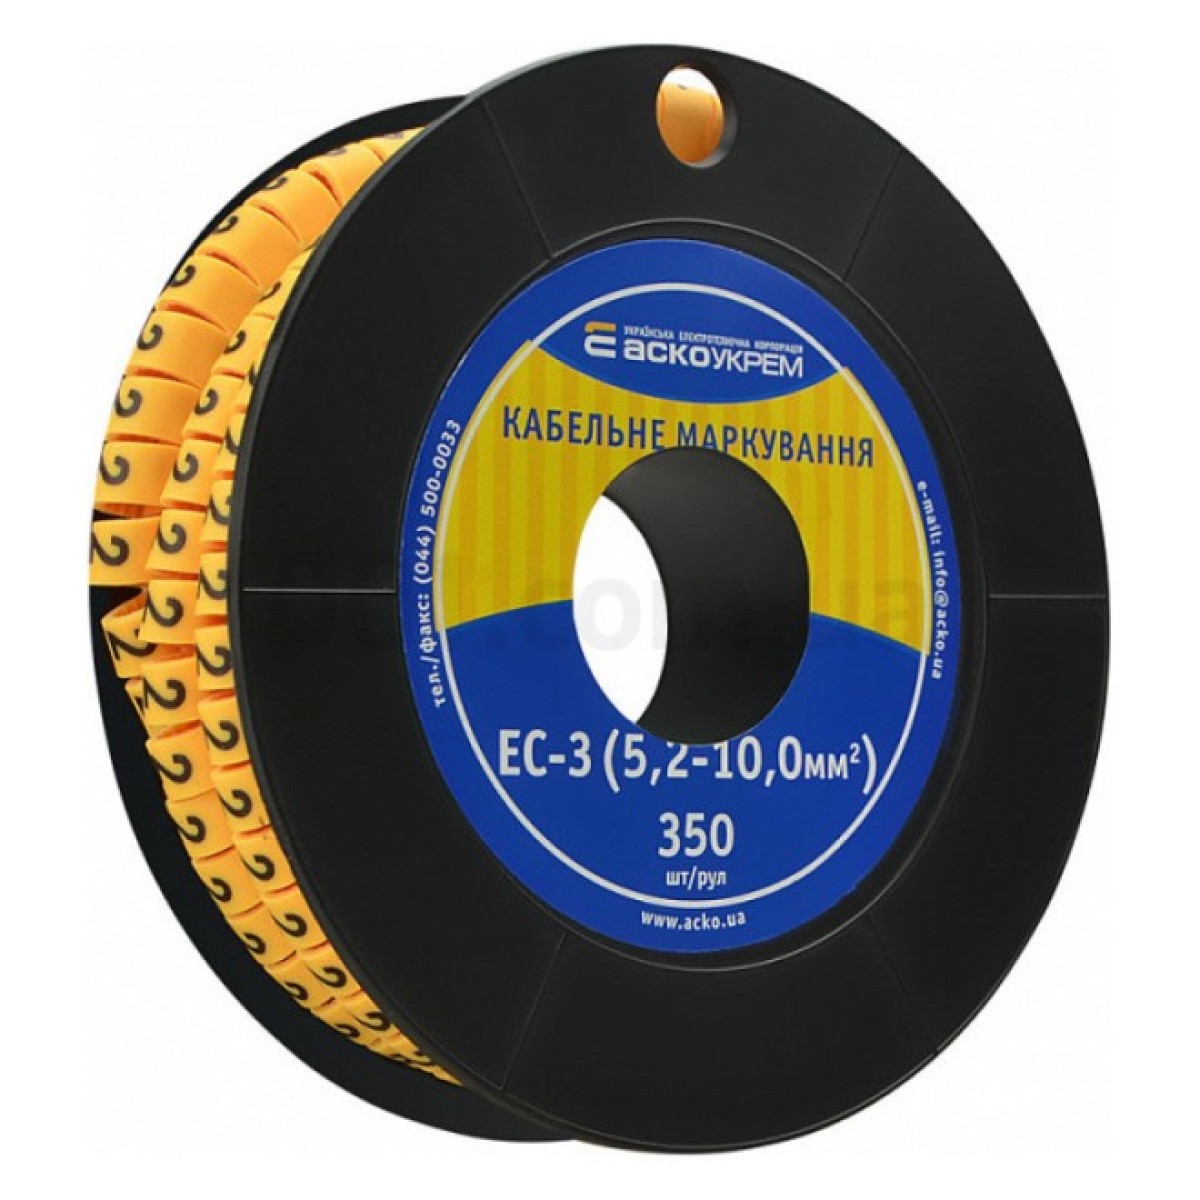 Маркування ЕС-3 для кабелю 5,2-10,0 мм² символ «2» (рулон 250 шт.), АСКО-УКРЕМ 98_98.jpg - фото 1